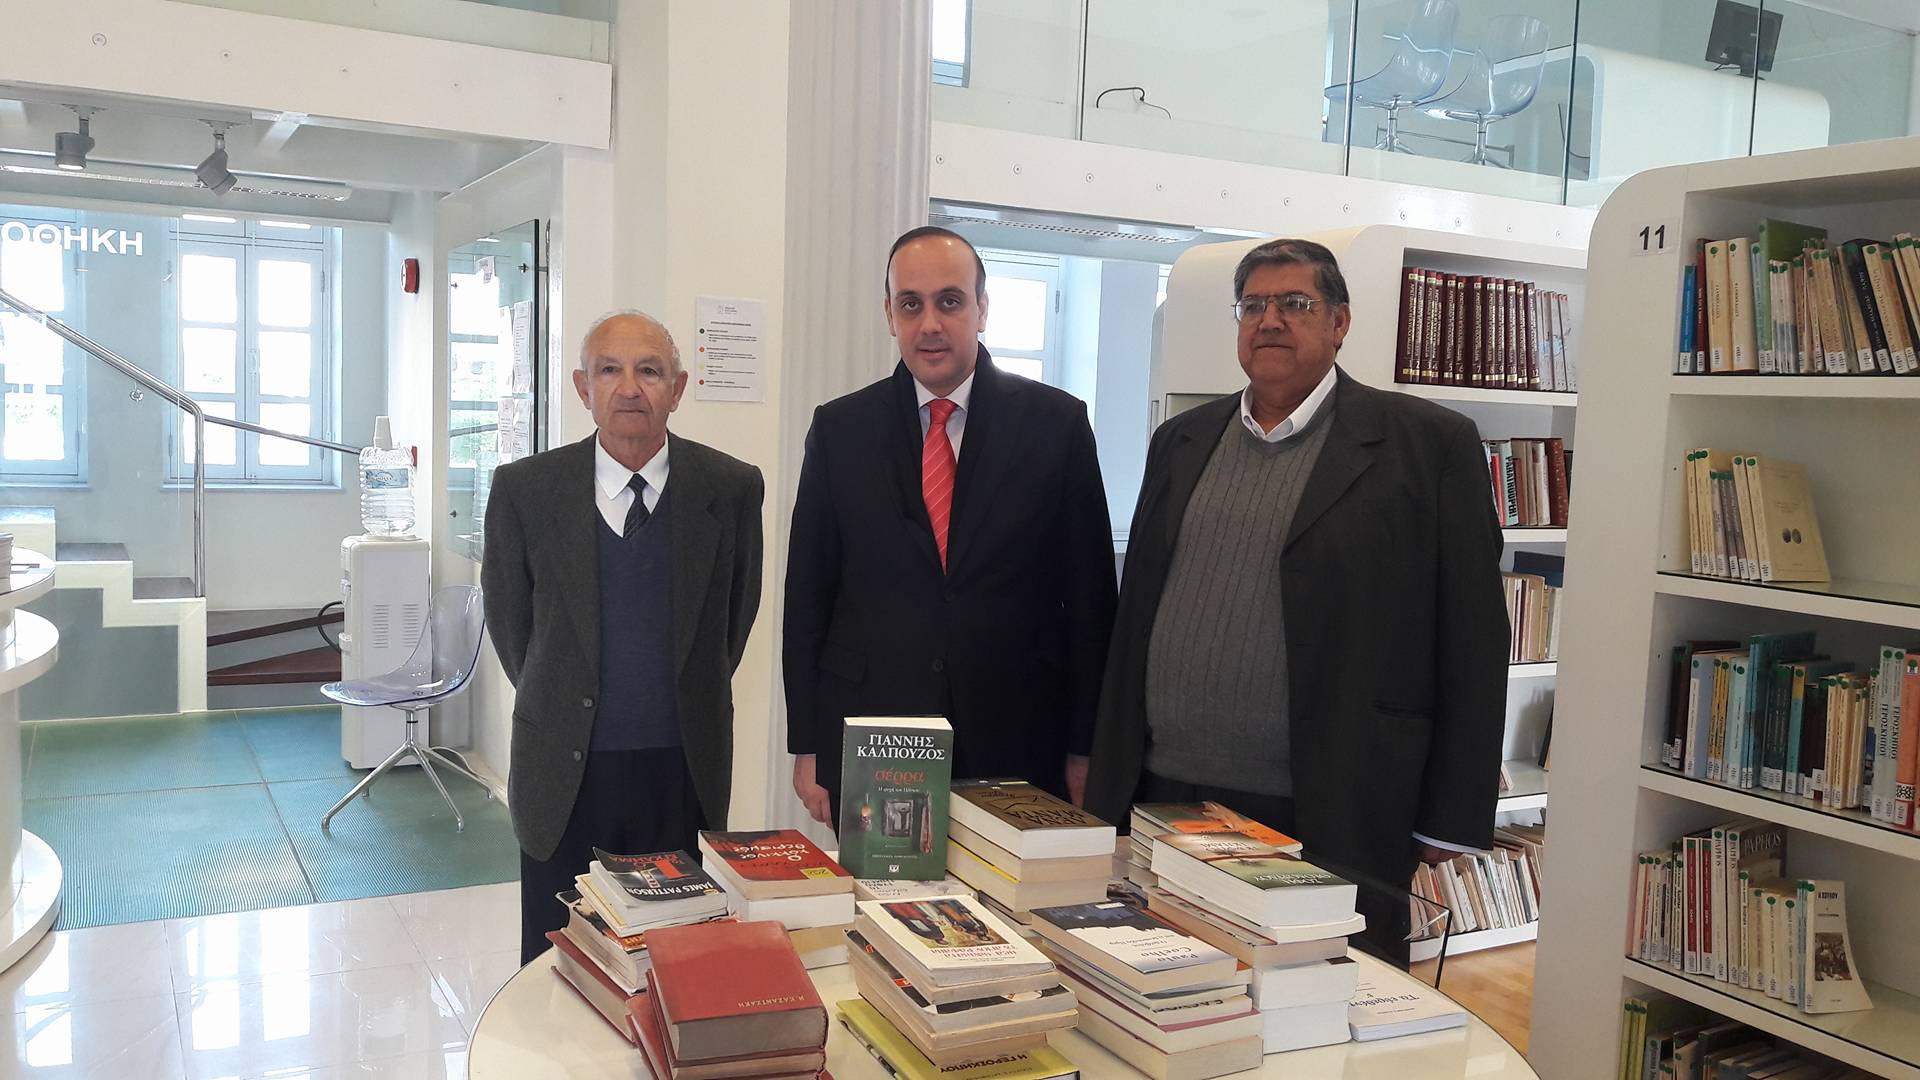 Δήμος Πάφου: Δωρεά βιβλίων στη Δημοτική Βιβλιοθήκη από τους συνταξιούχους δασκάλους